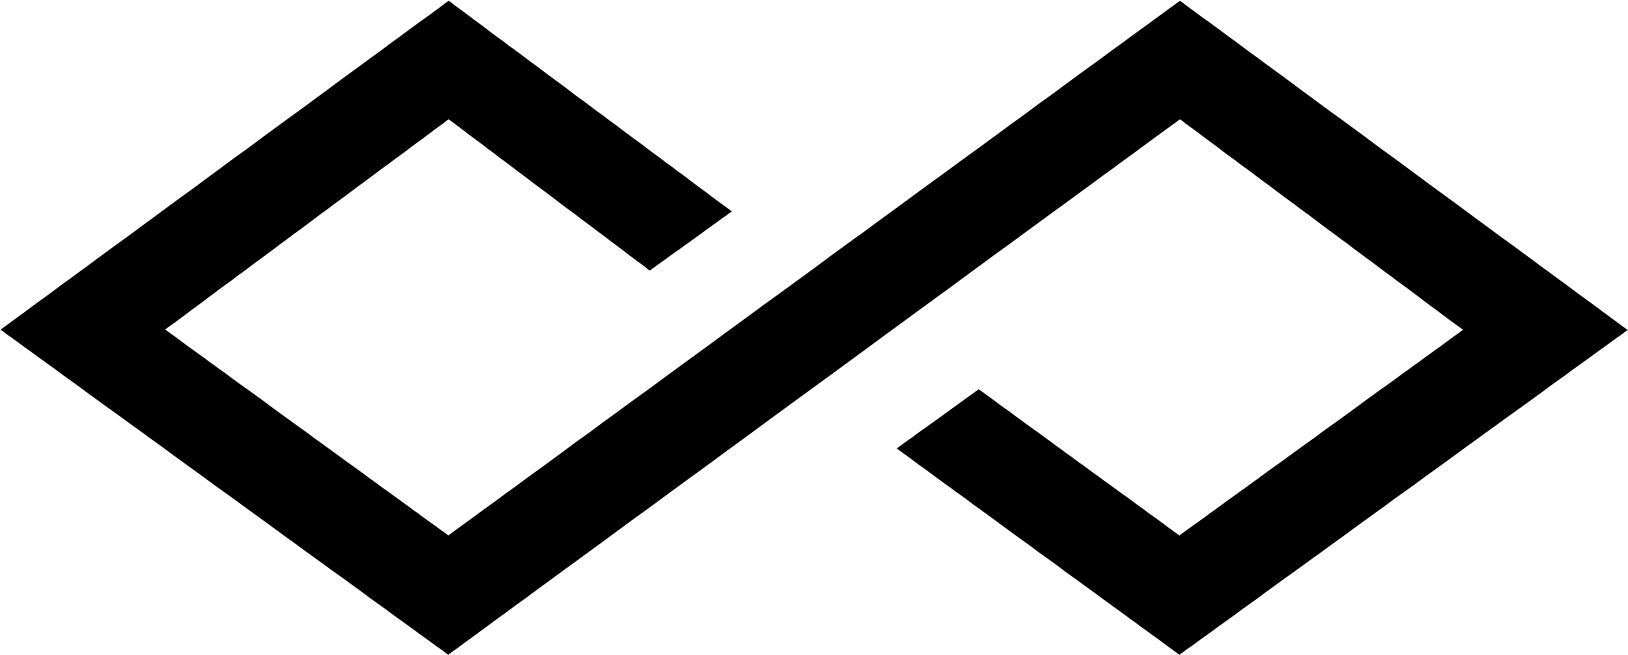 Simon Property Group logo (transparent PNG)